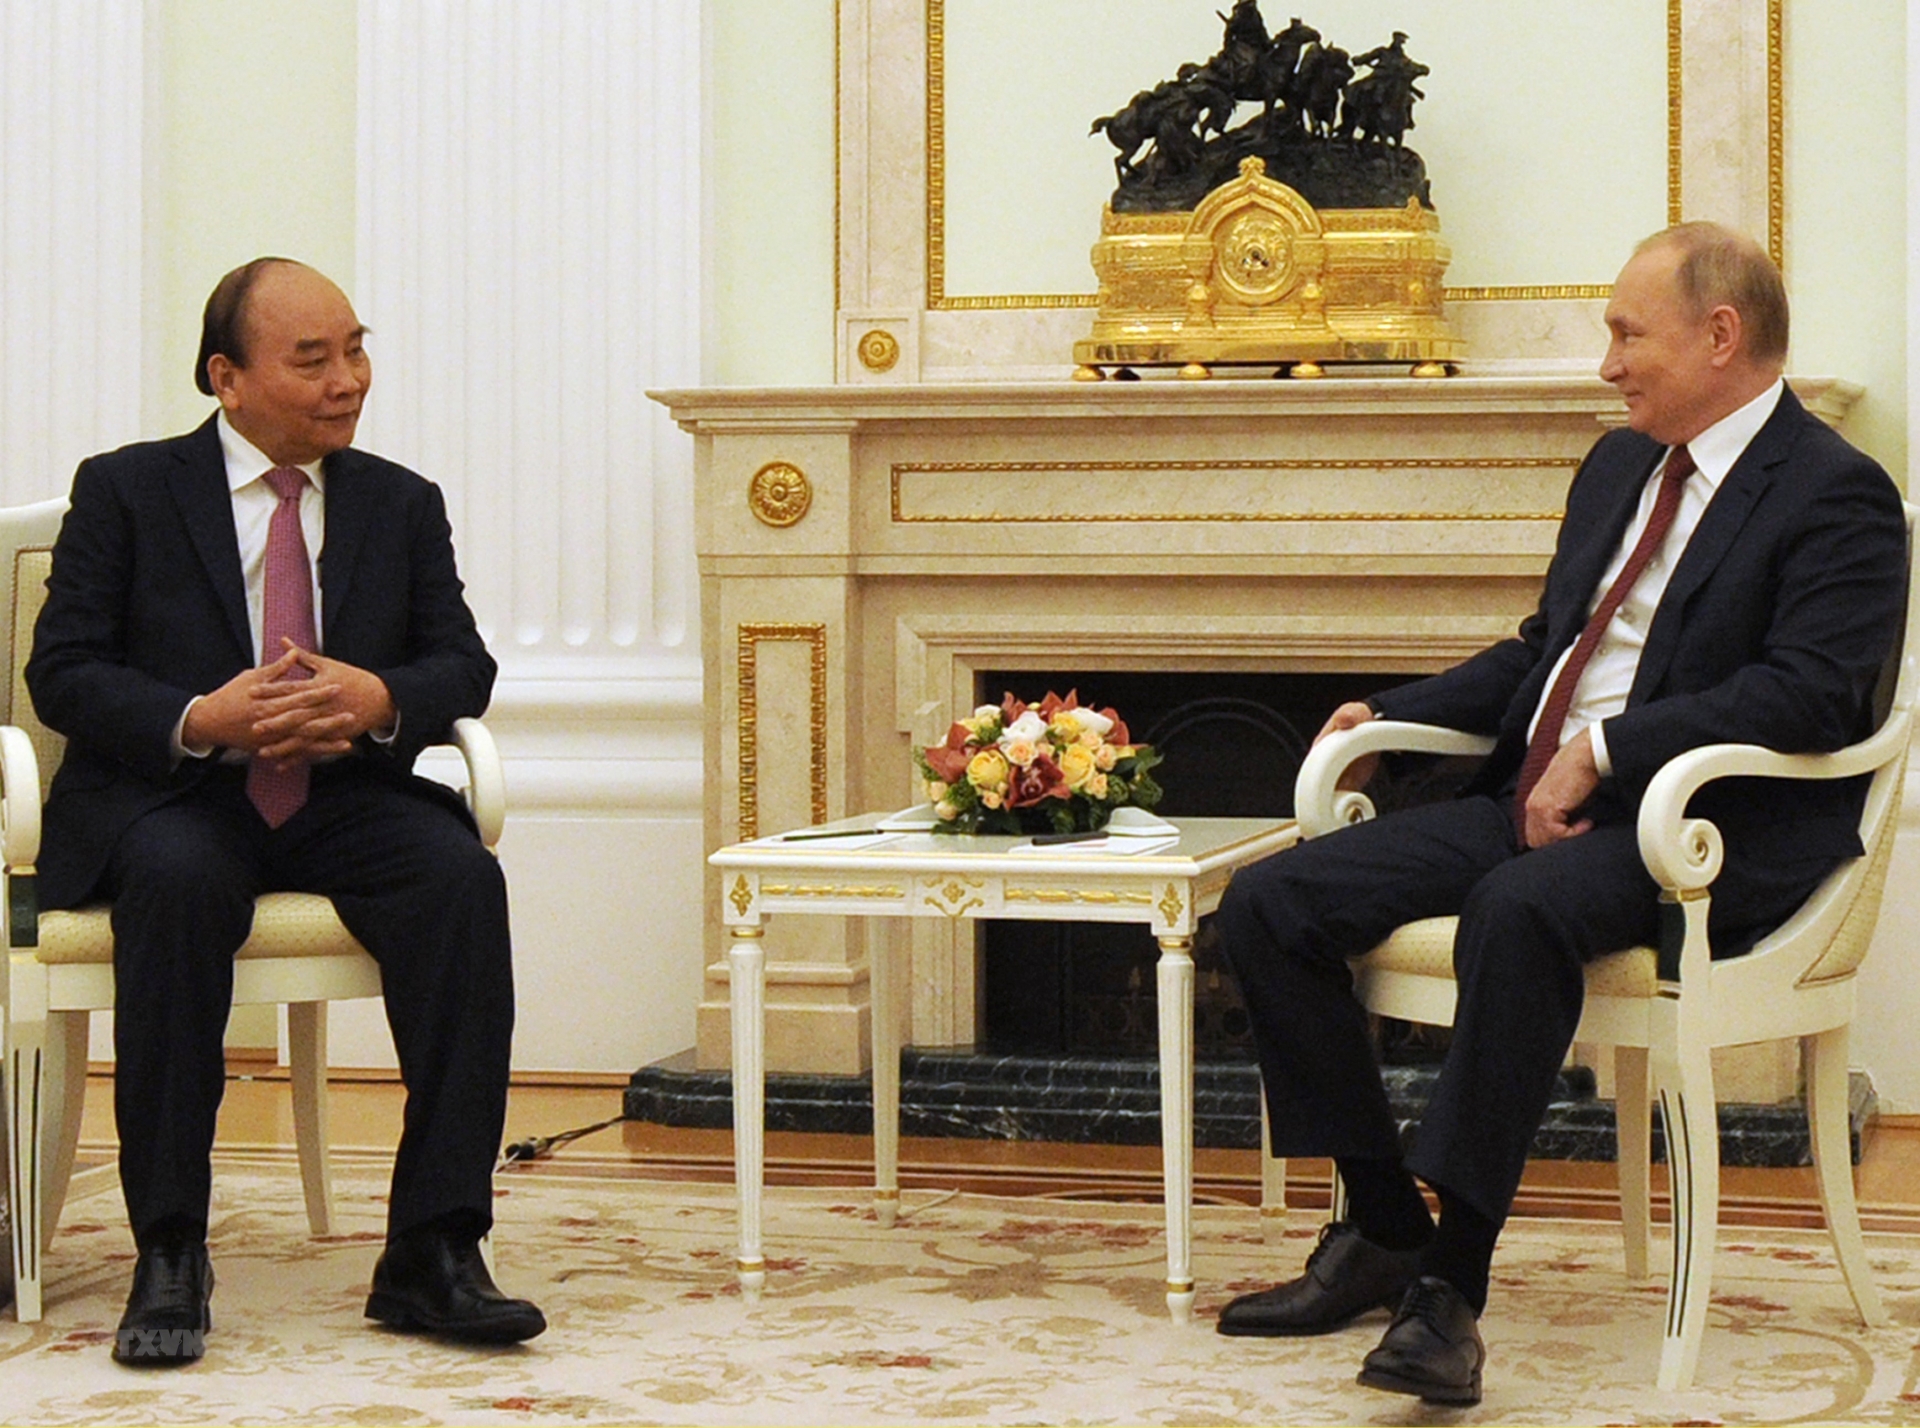 越南国家主席阮春福与俄罗斯总统普京举行会谈